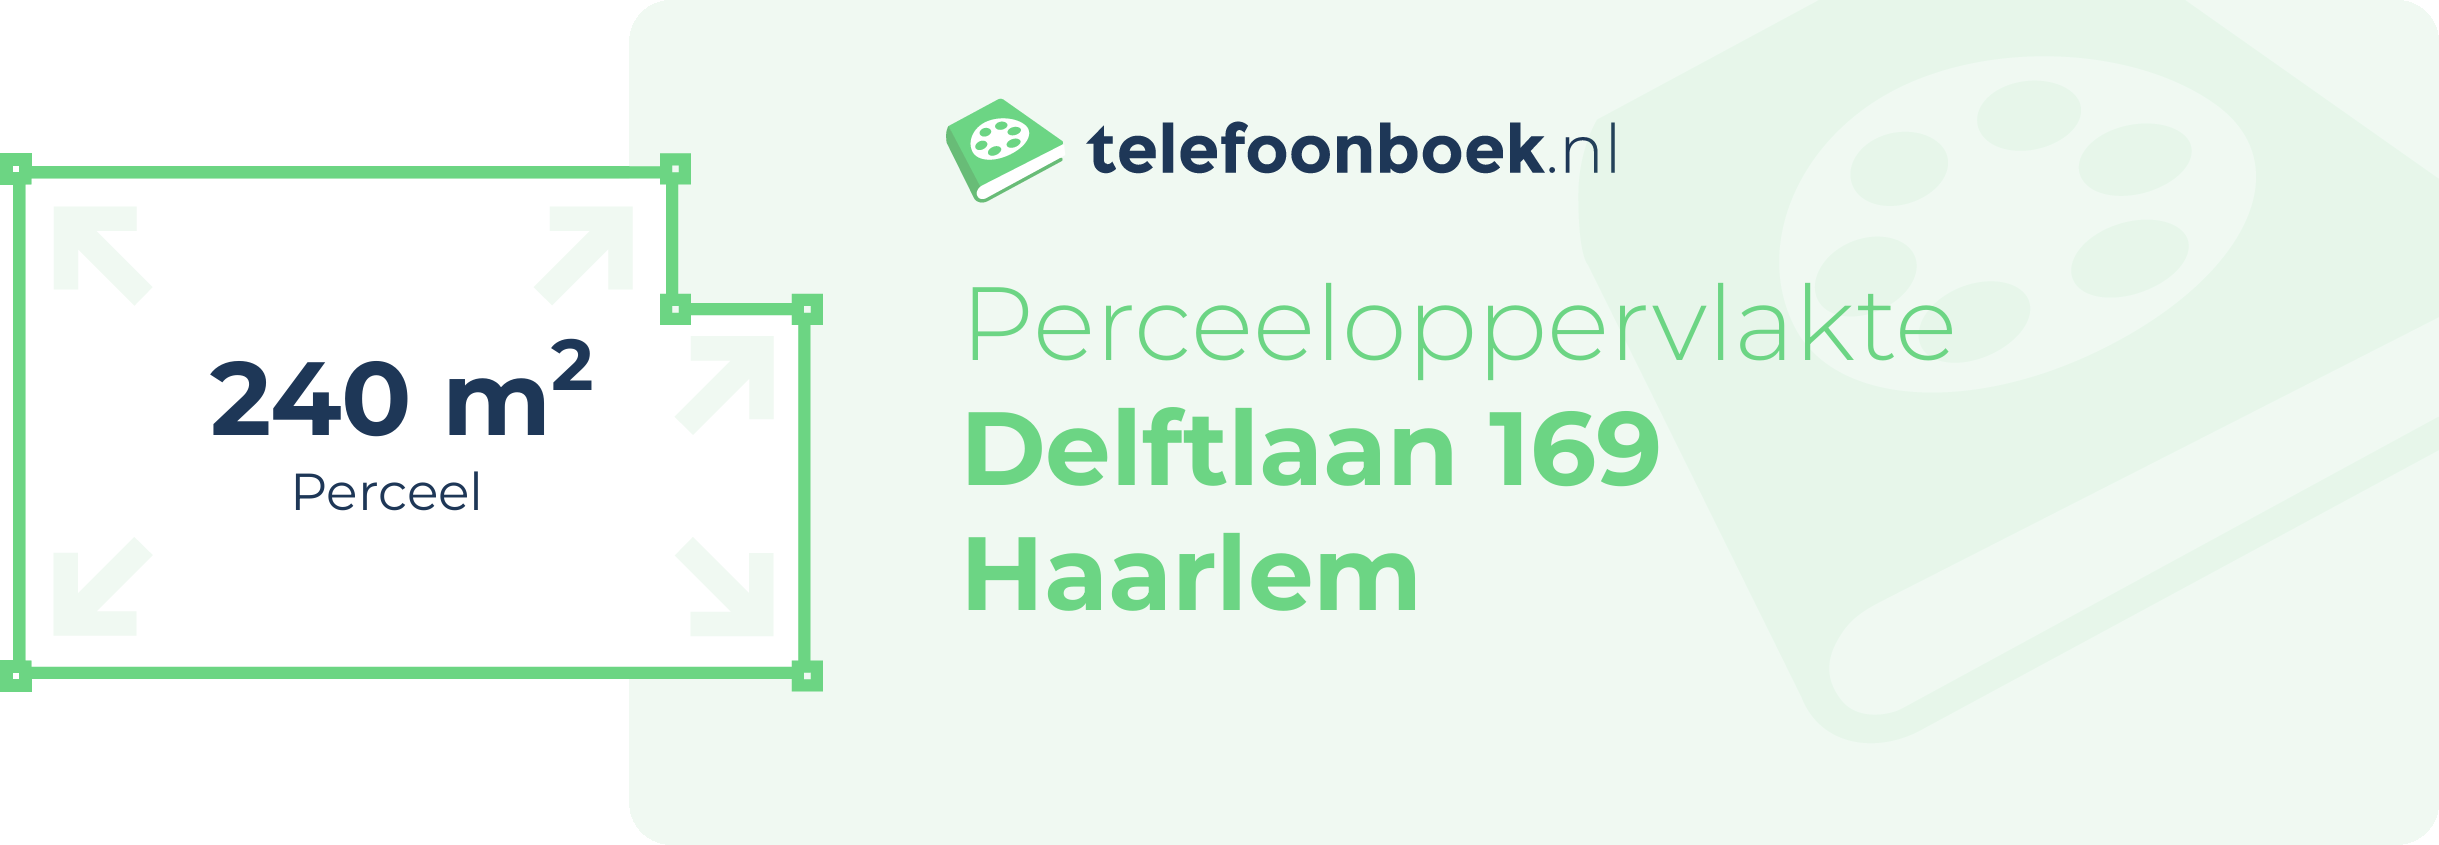 Perceeloppervlakte Delftlaan 169 Haarlem